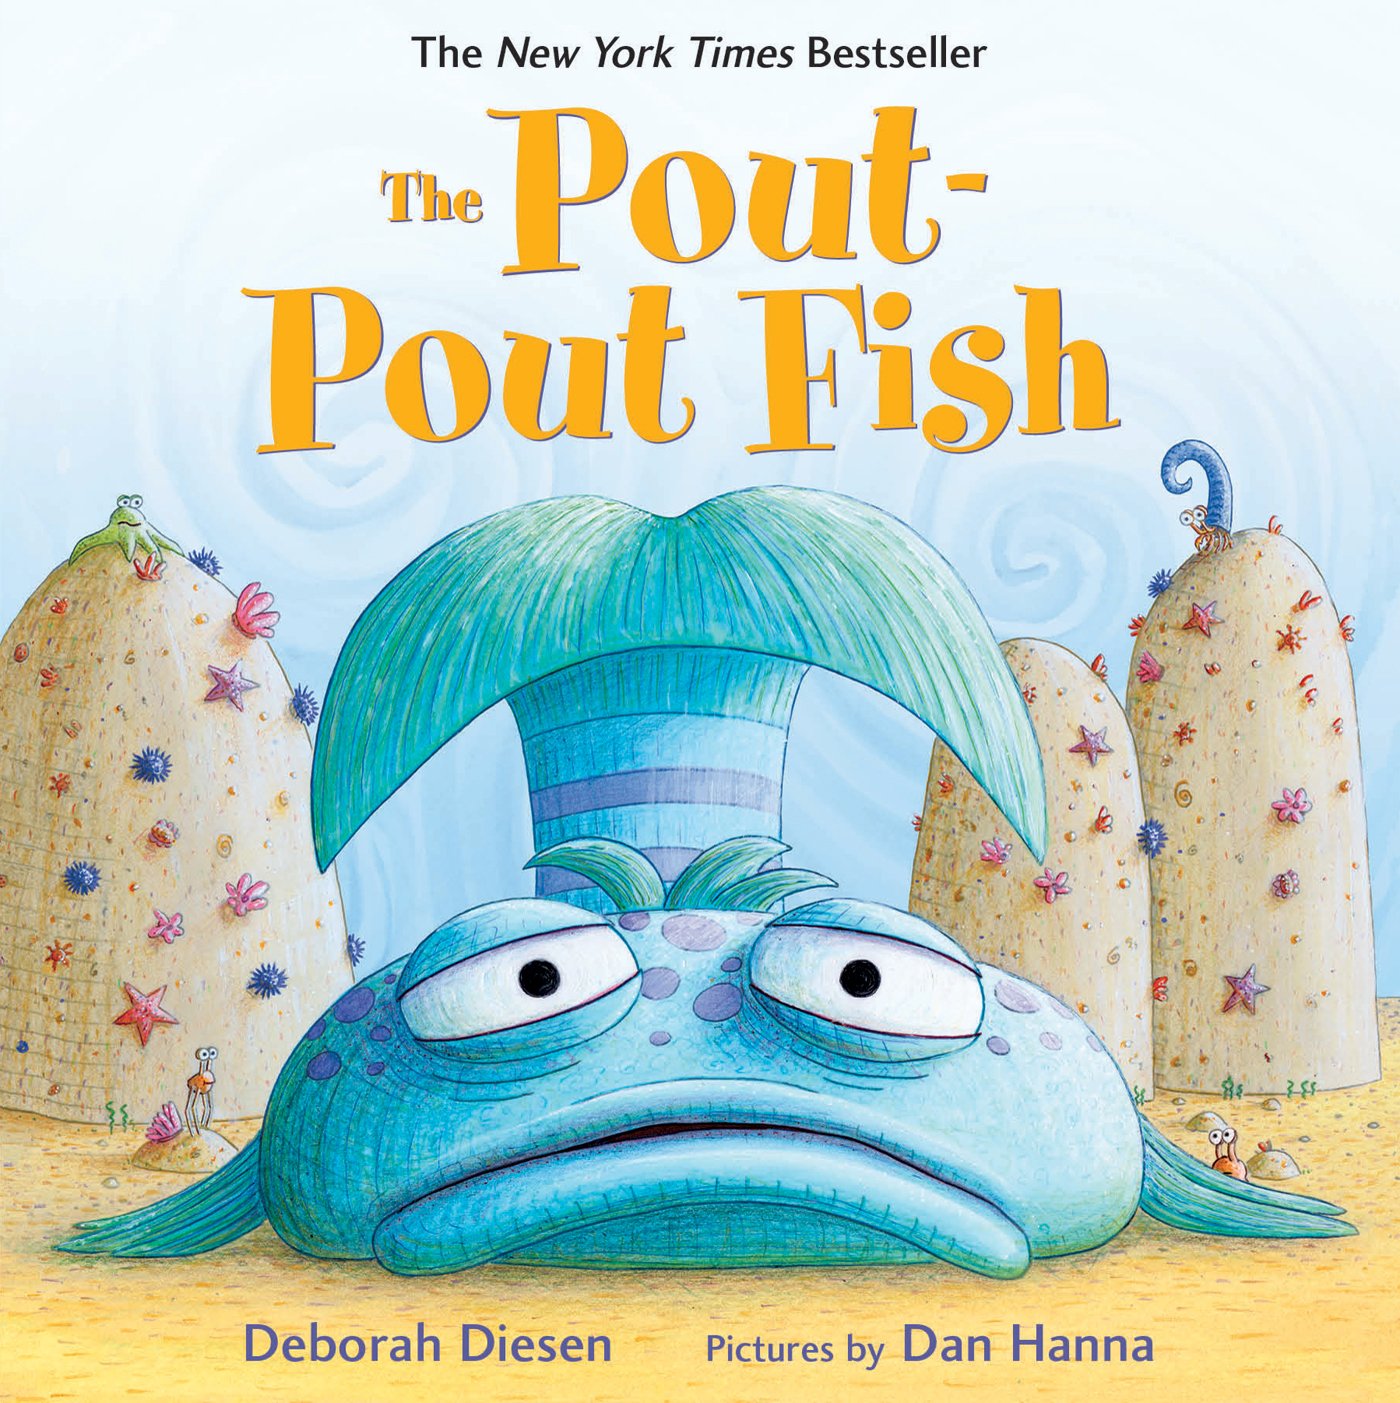 Considering Deborah Diesen's “The Pout-Pout Fish” – Dad at Home